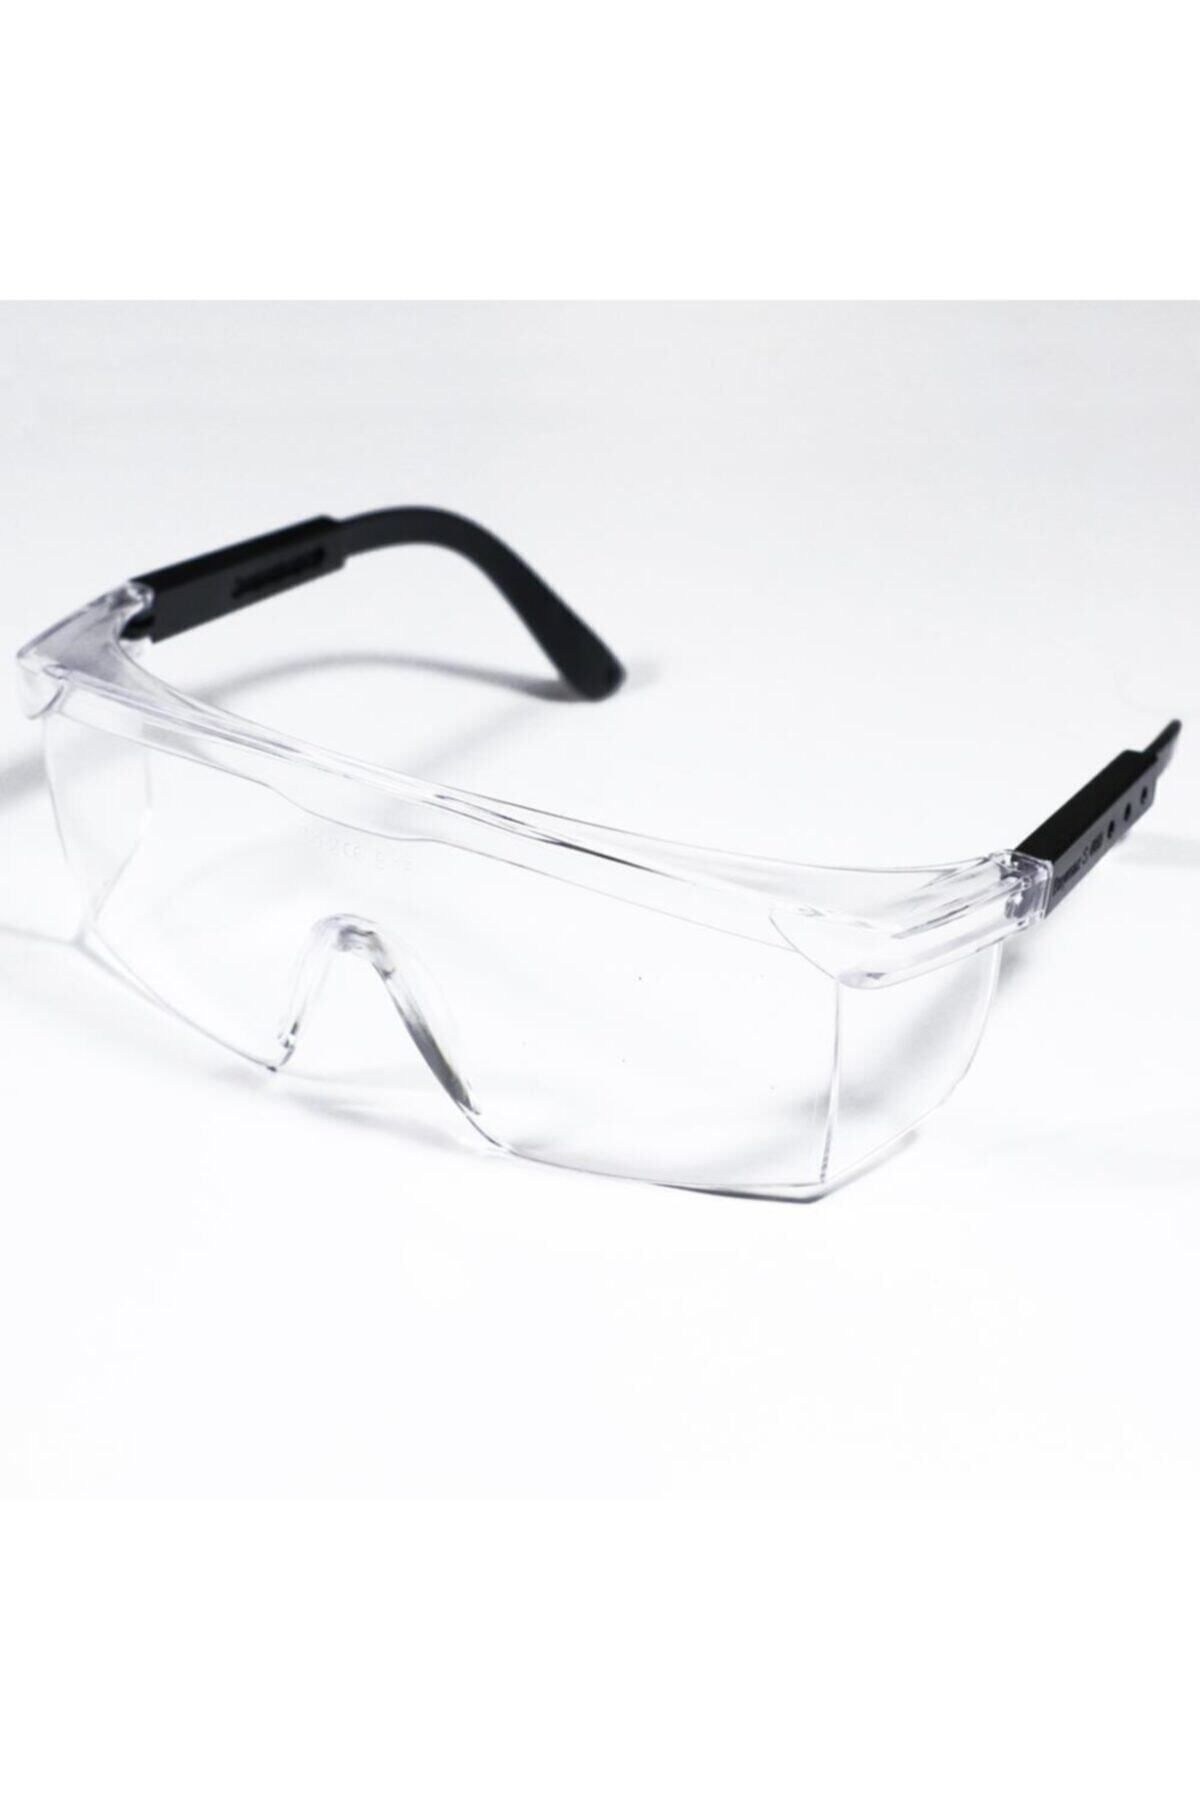 Baymax S400 Koruyucu Iş Gözlüğü Şeffaf